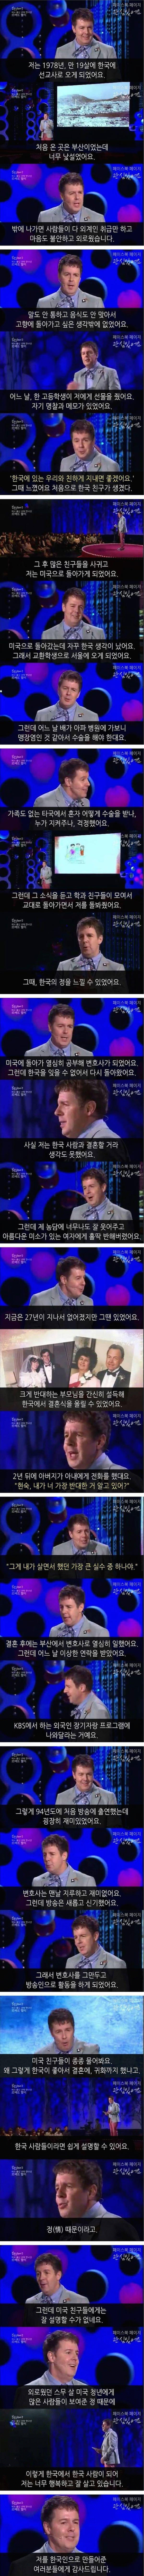 로버트 할리가 한국에 귀화한 이유